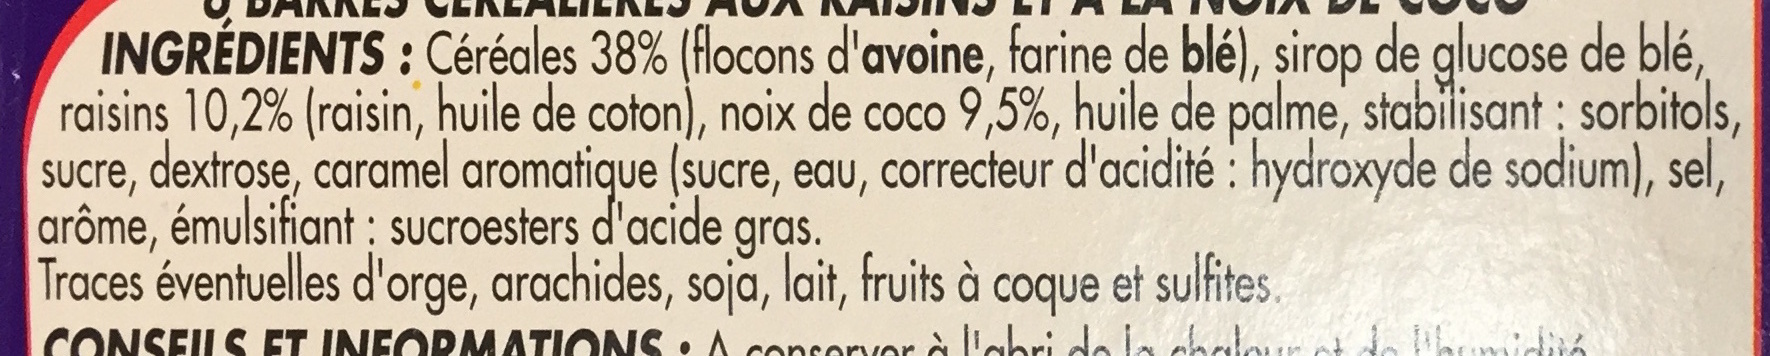 Barres céréalières Raisin & Noix de Coco - Ingredientes - fr